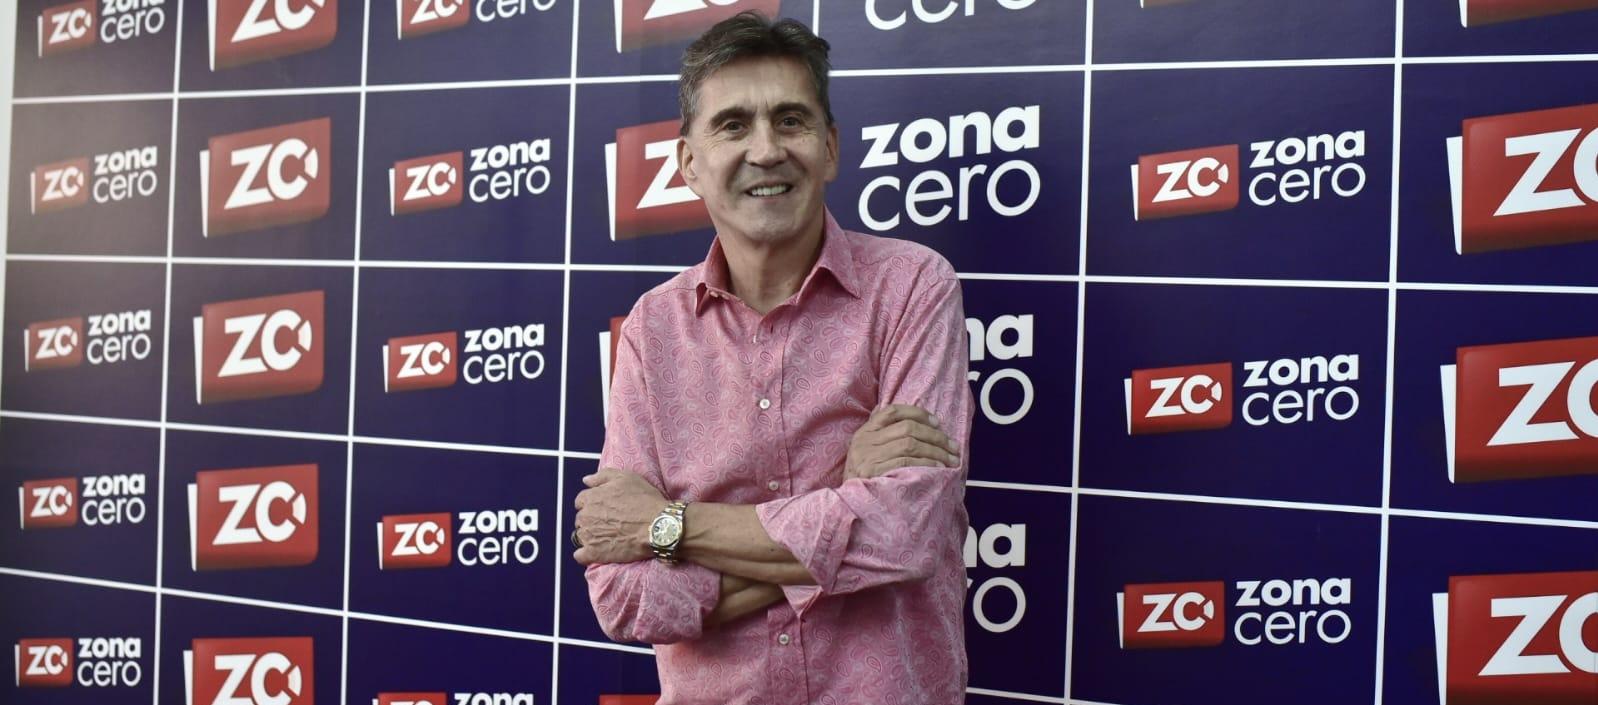 Ricardo Leyva, empresario de conciertos, durante su visita a zonacero.com.